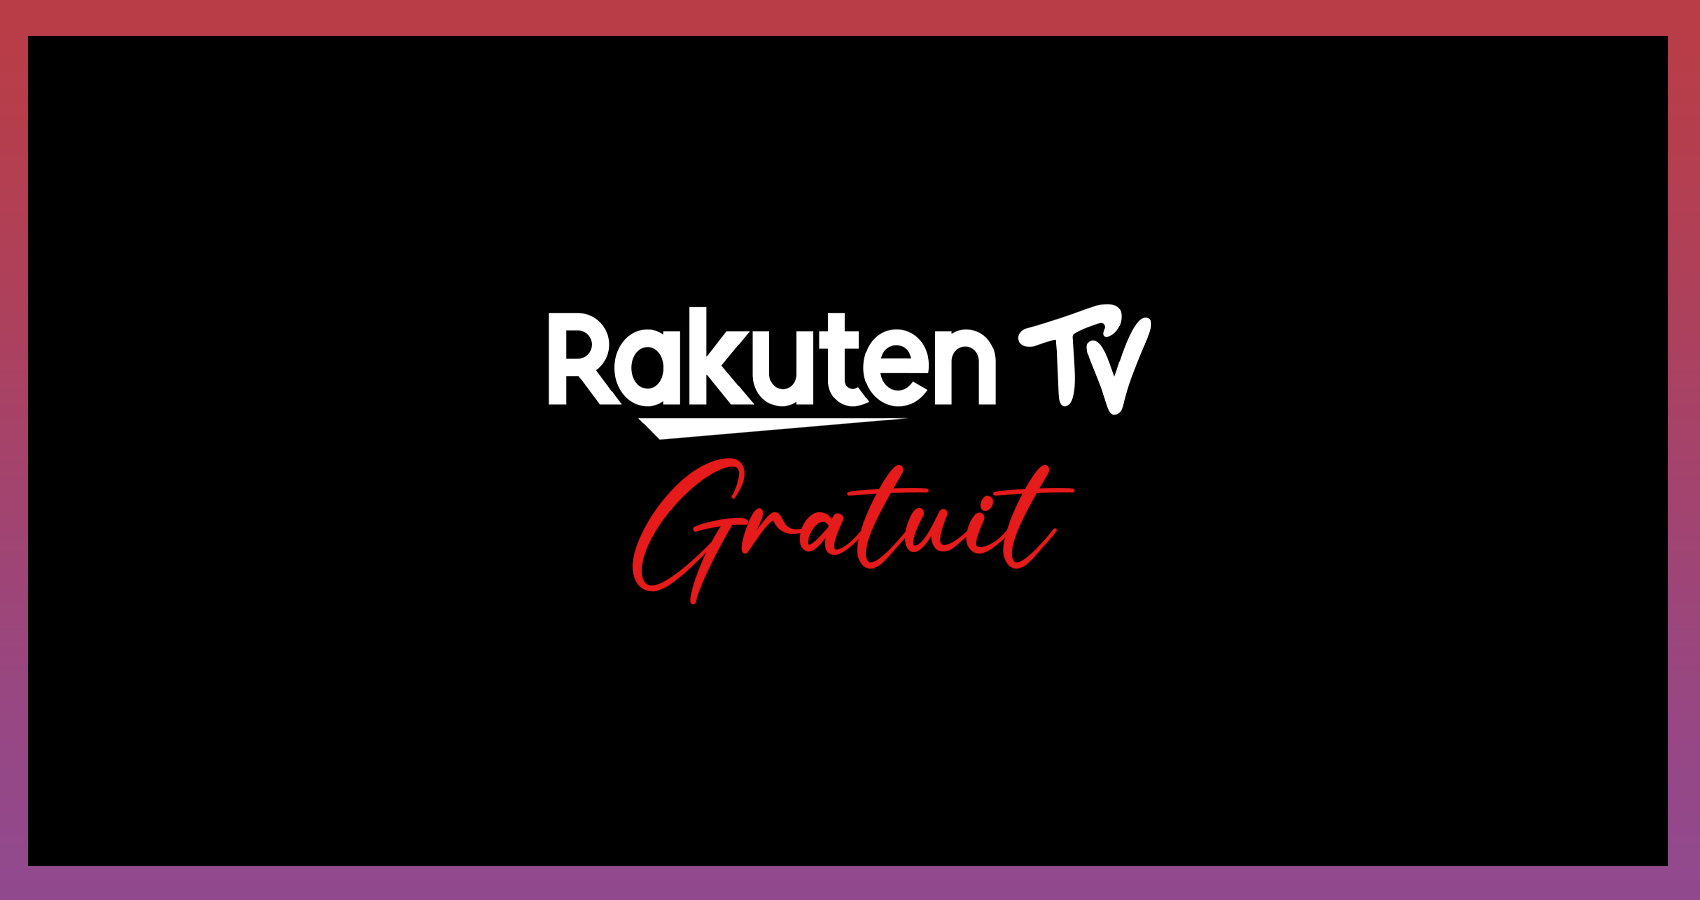 Rakuten TV Gratuit : Tout savoir sur le service de Streaming Gratuit et Légal